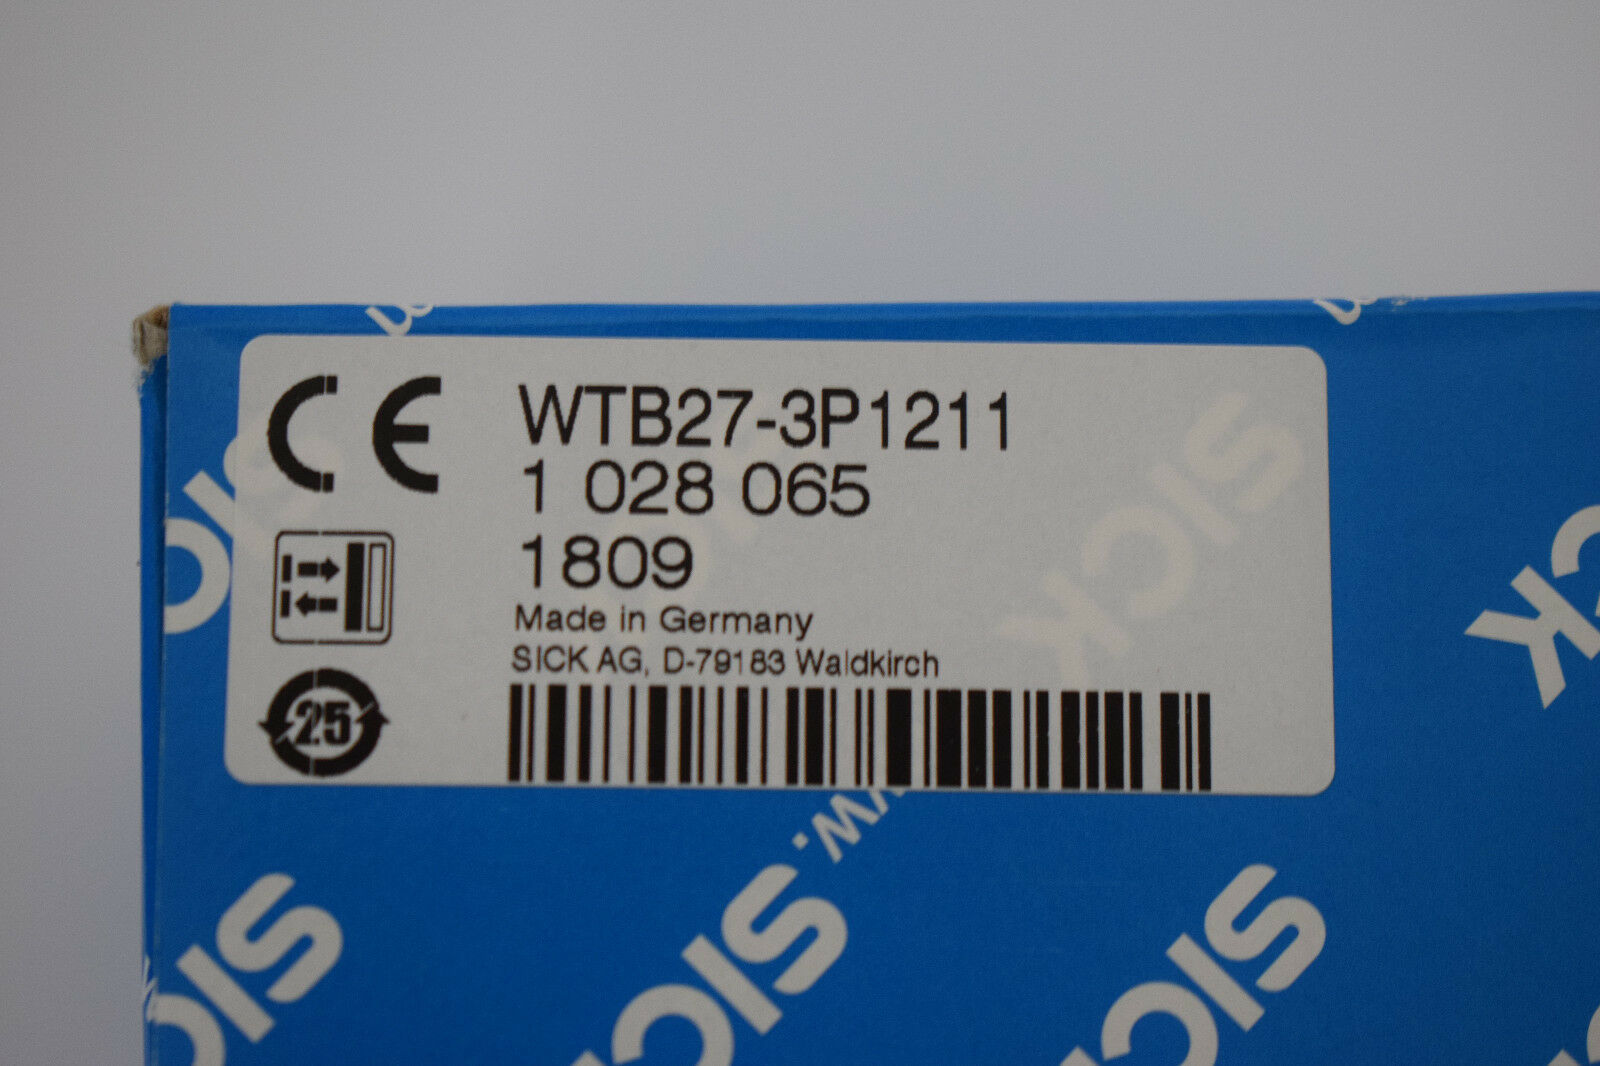 Sick Fotoelektrischer Sensor WTB27-3P1211